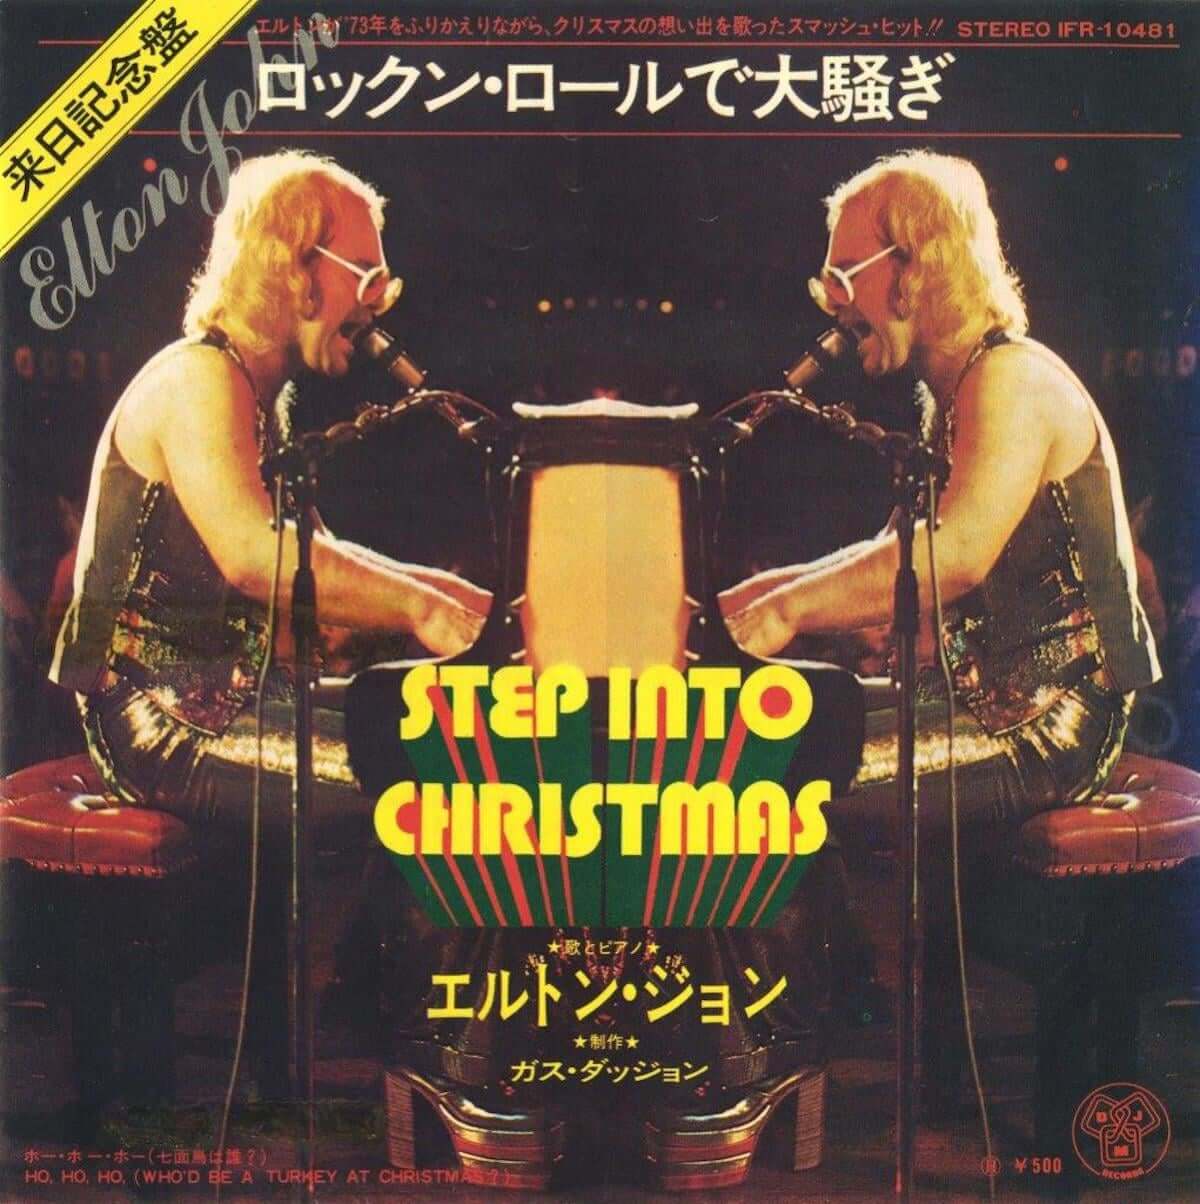 エルトン・ジョン、1973年の「ステップ・イントゥ・クリスマス（ロックン・ロールで大騒ぎ）」の貴重な映像が公開。日本盤ジャケットでの配信も開始。 music181210-elton-john-3-1200x1204